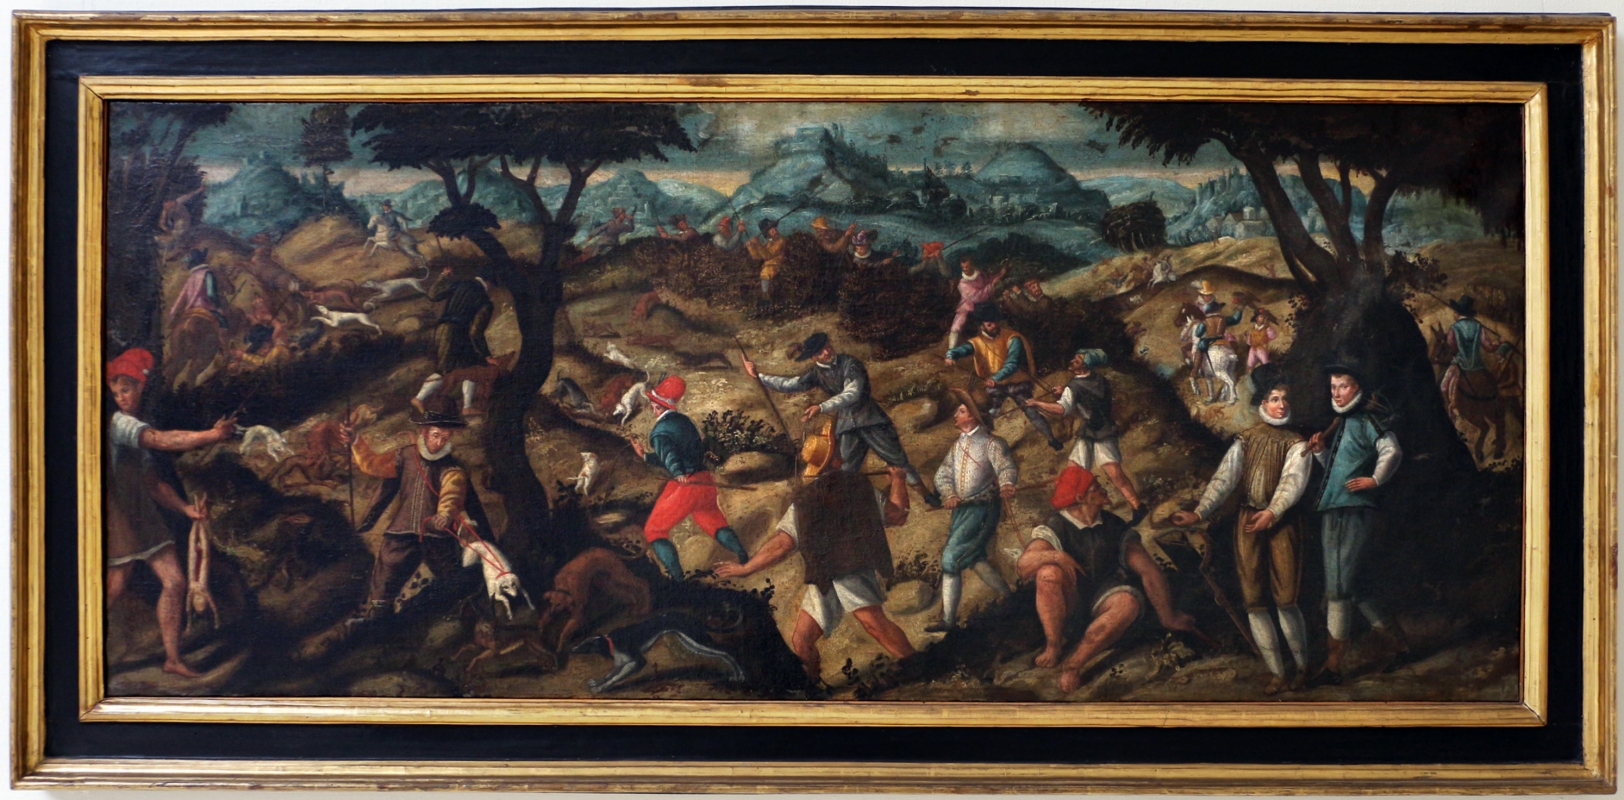 Livio e gianfranco modigliani, caccia alla lepre, 1575-1605 ca - Sailko